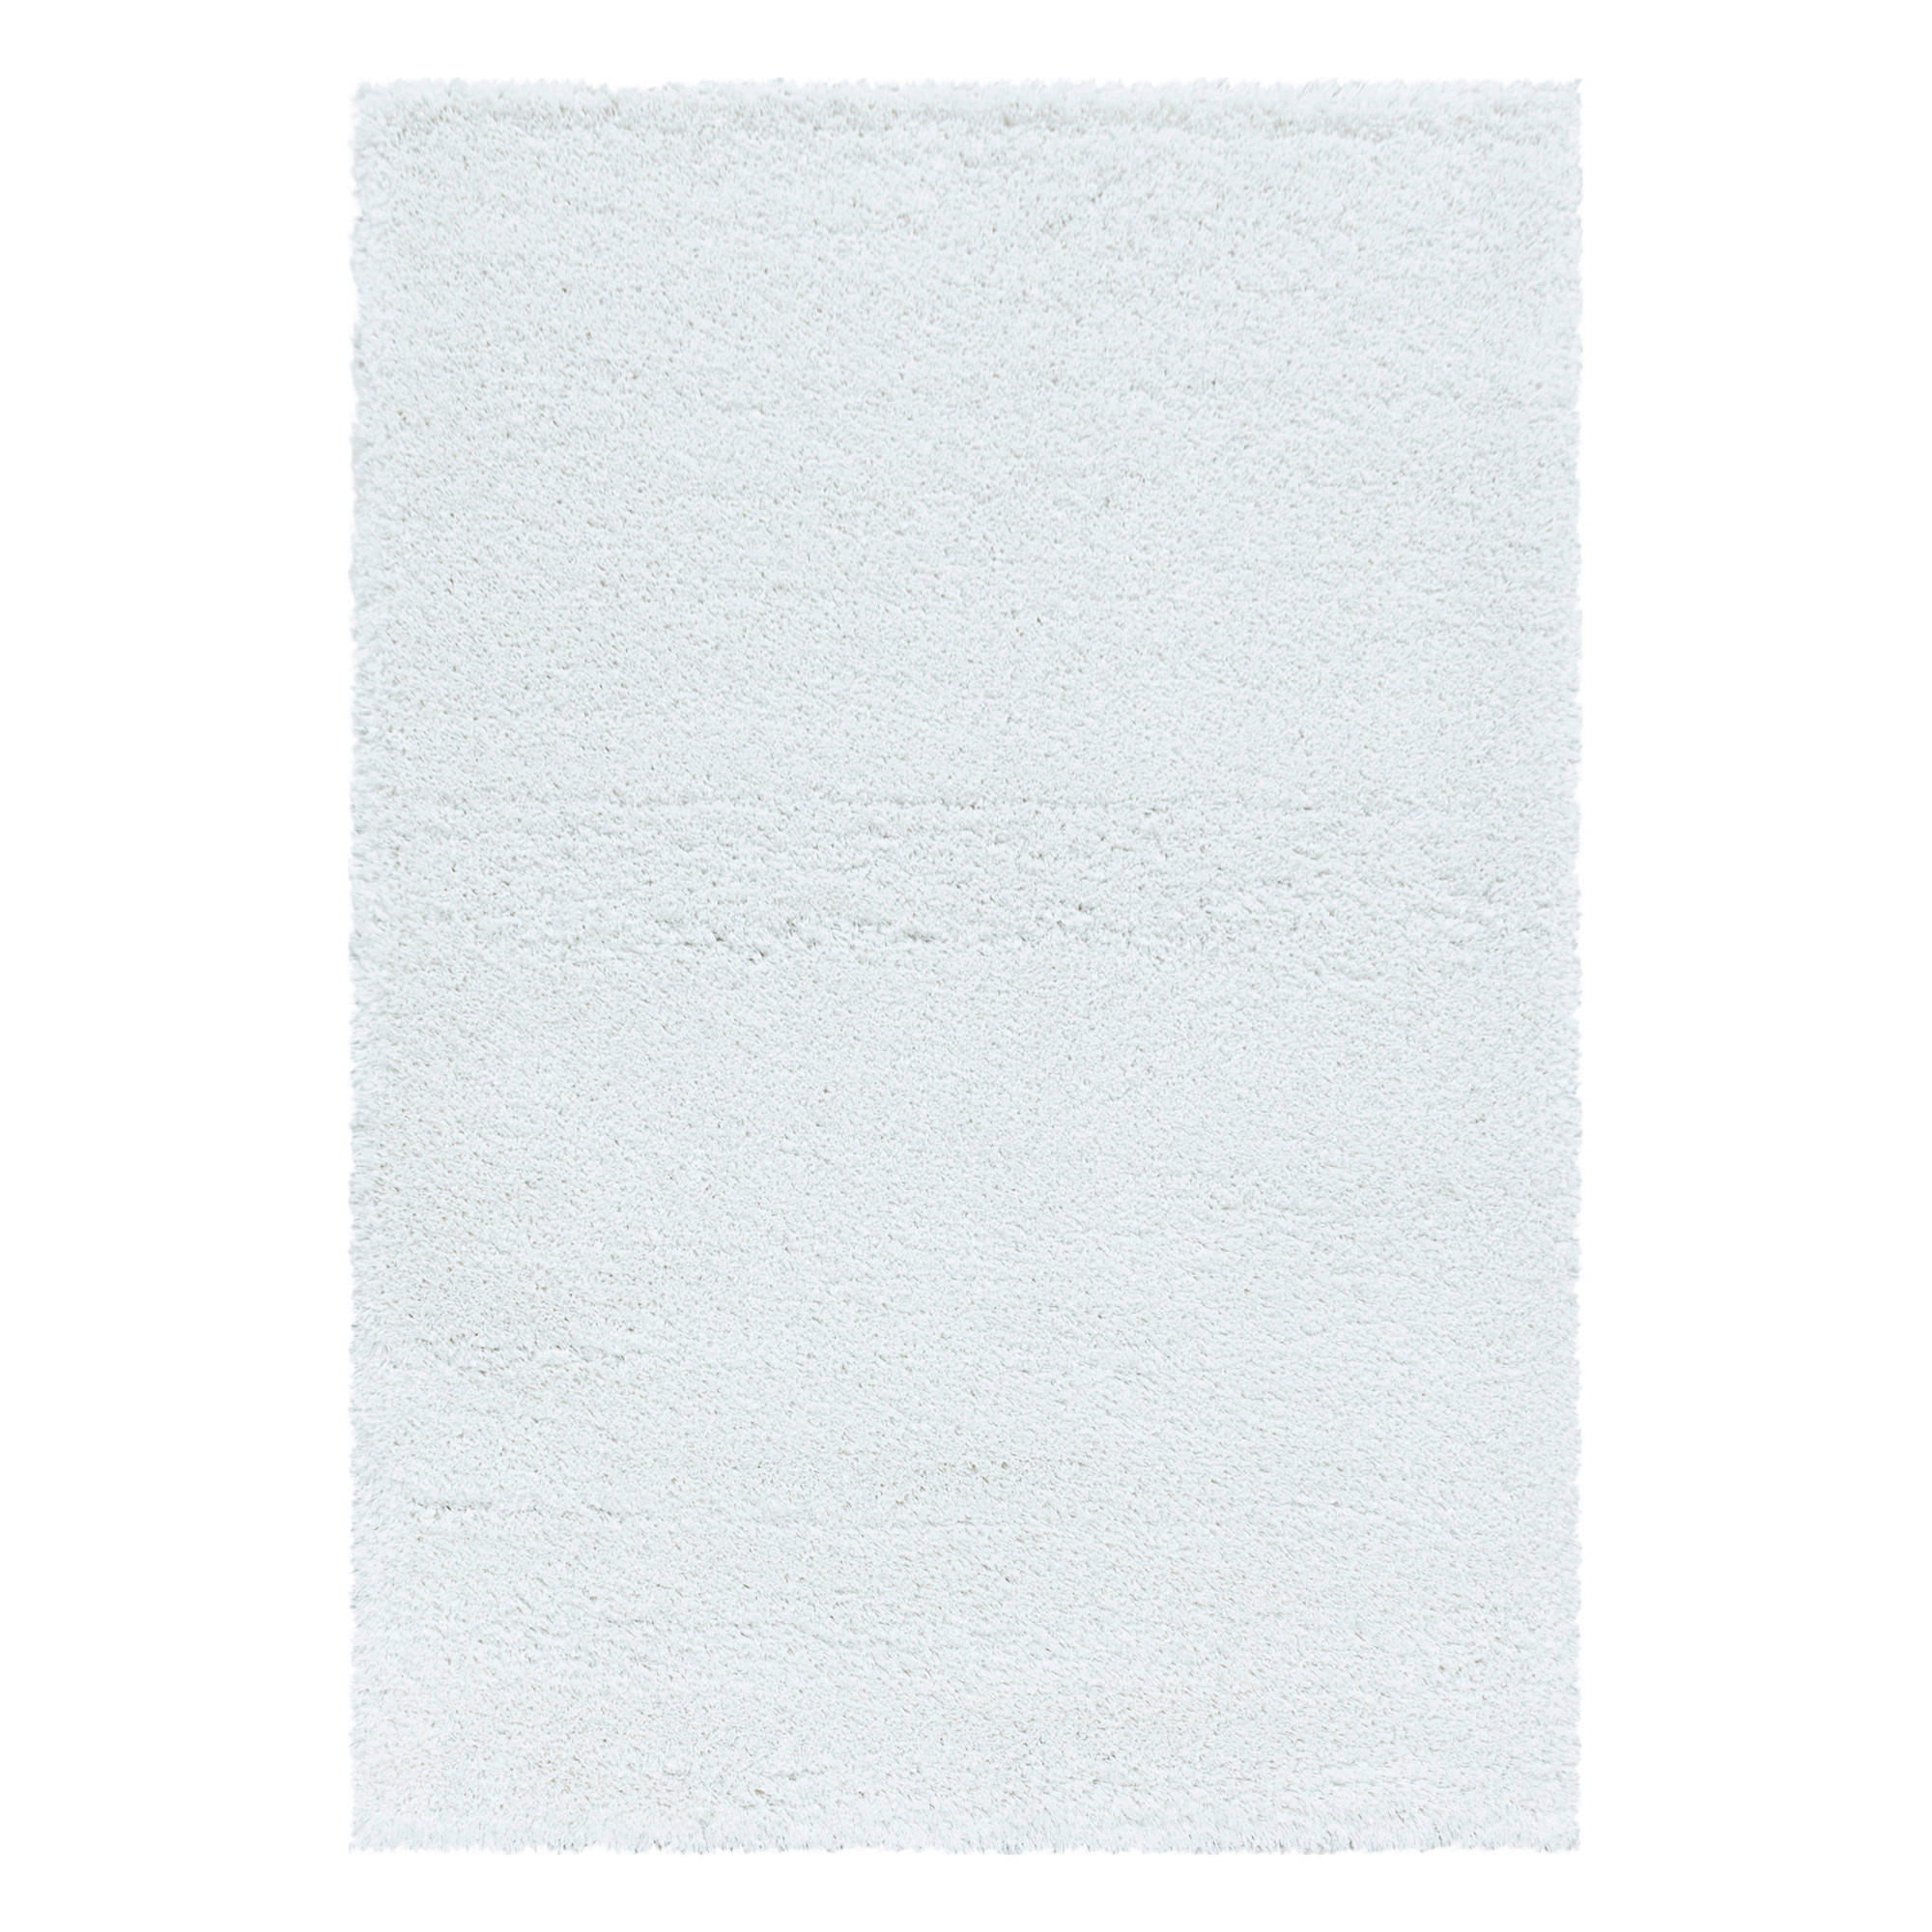 HOCHFLORTEPPICH  280/370 cm  gewebt  Weiß   - Weiß, Basics, Textil (280/370cm) - Novel